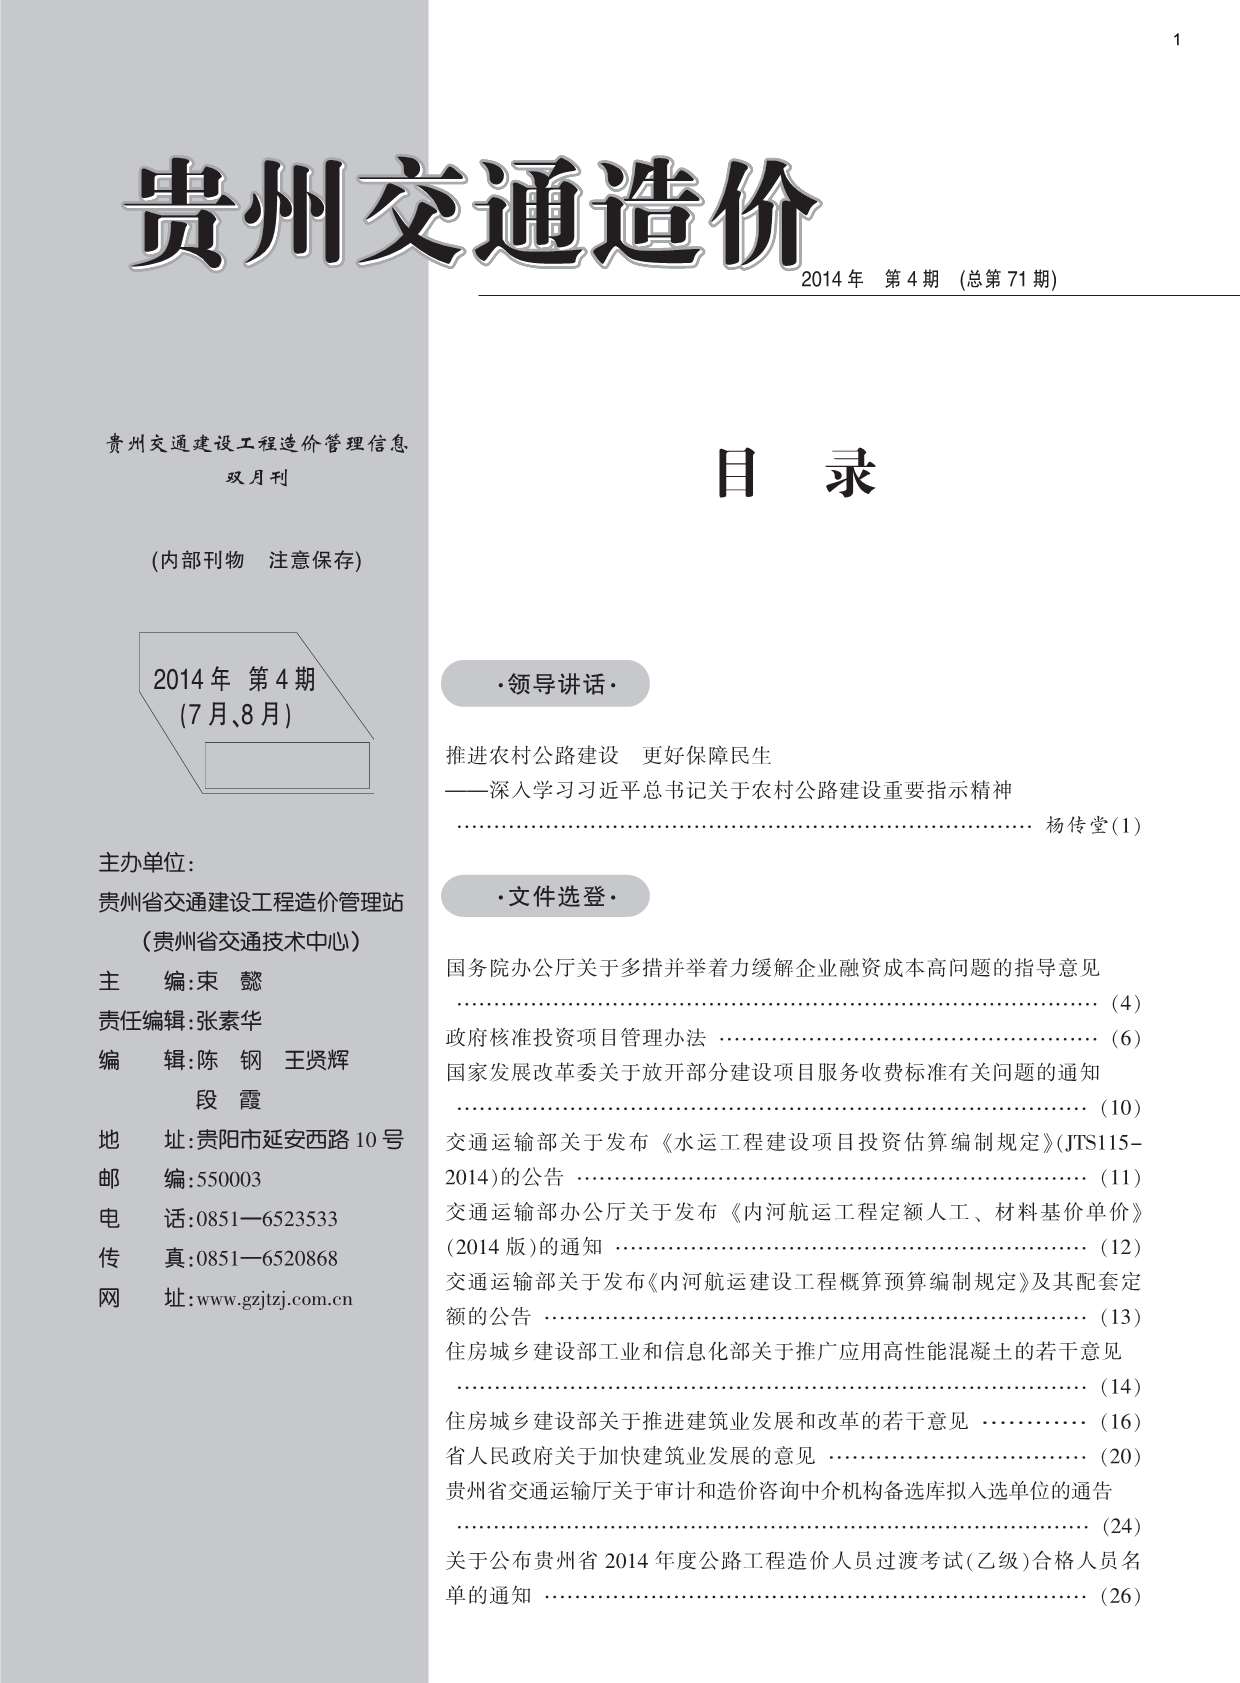 贵州省2014年4月交通公路信息价